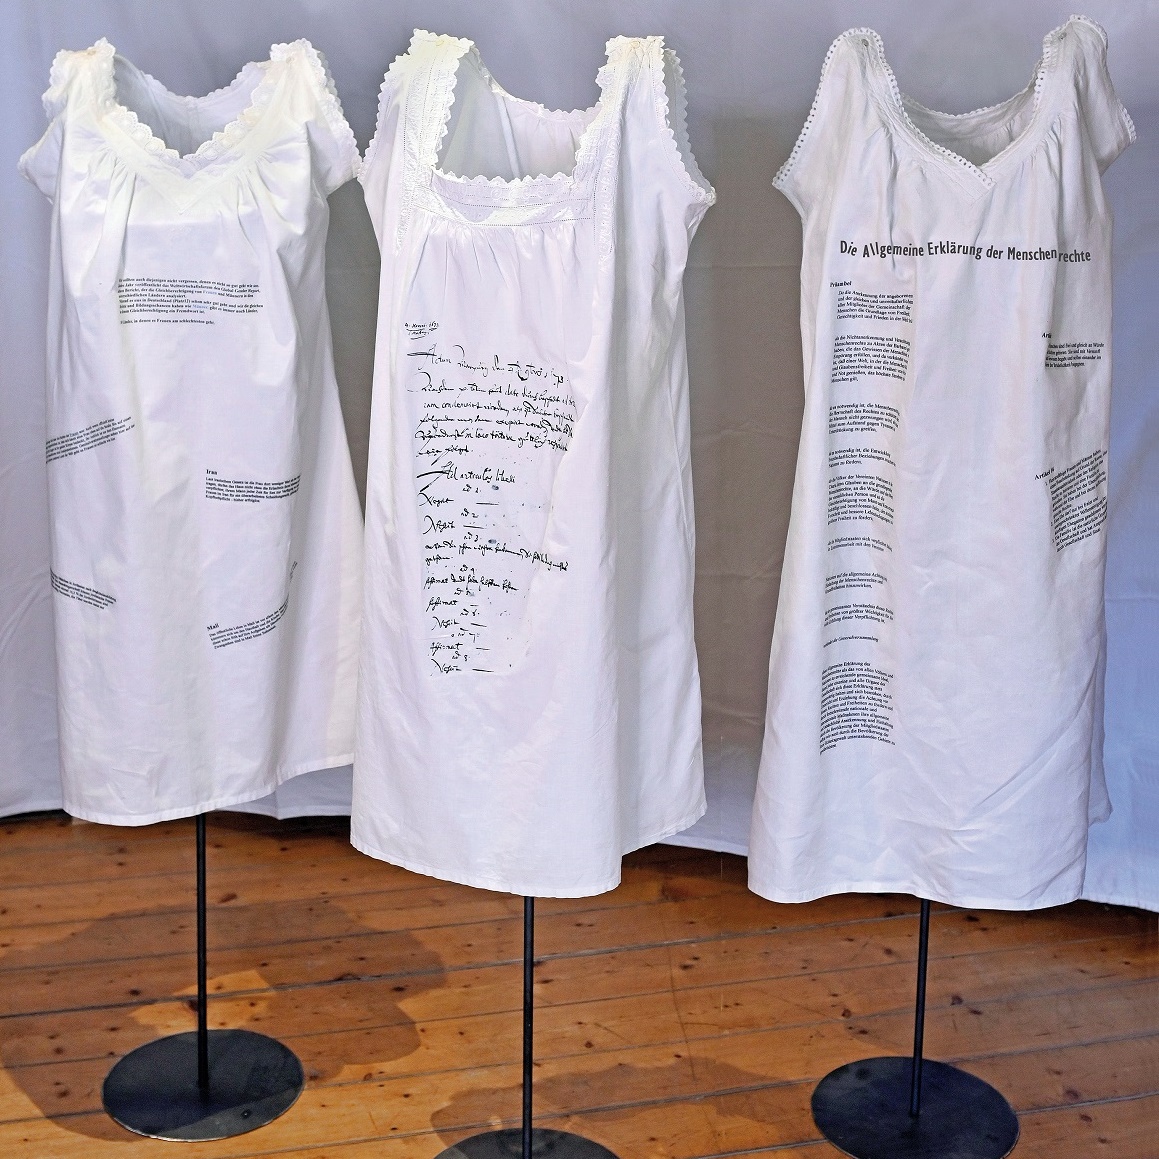 Drei Kleiderständerm, auf denen weiße Nachthemden hängen, die beschriftet sind.